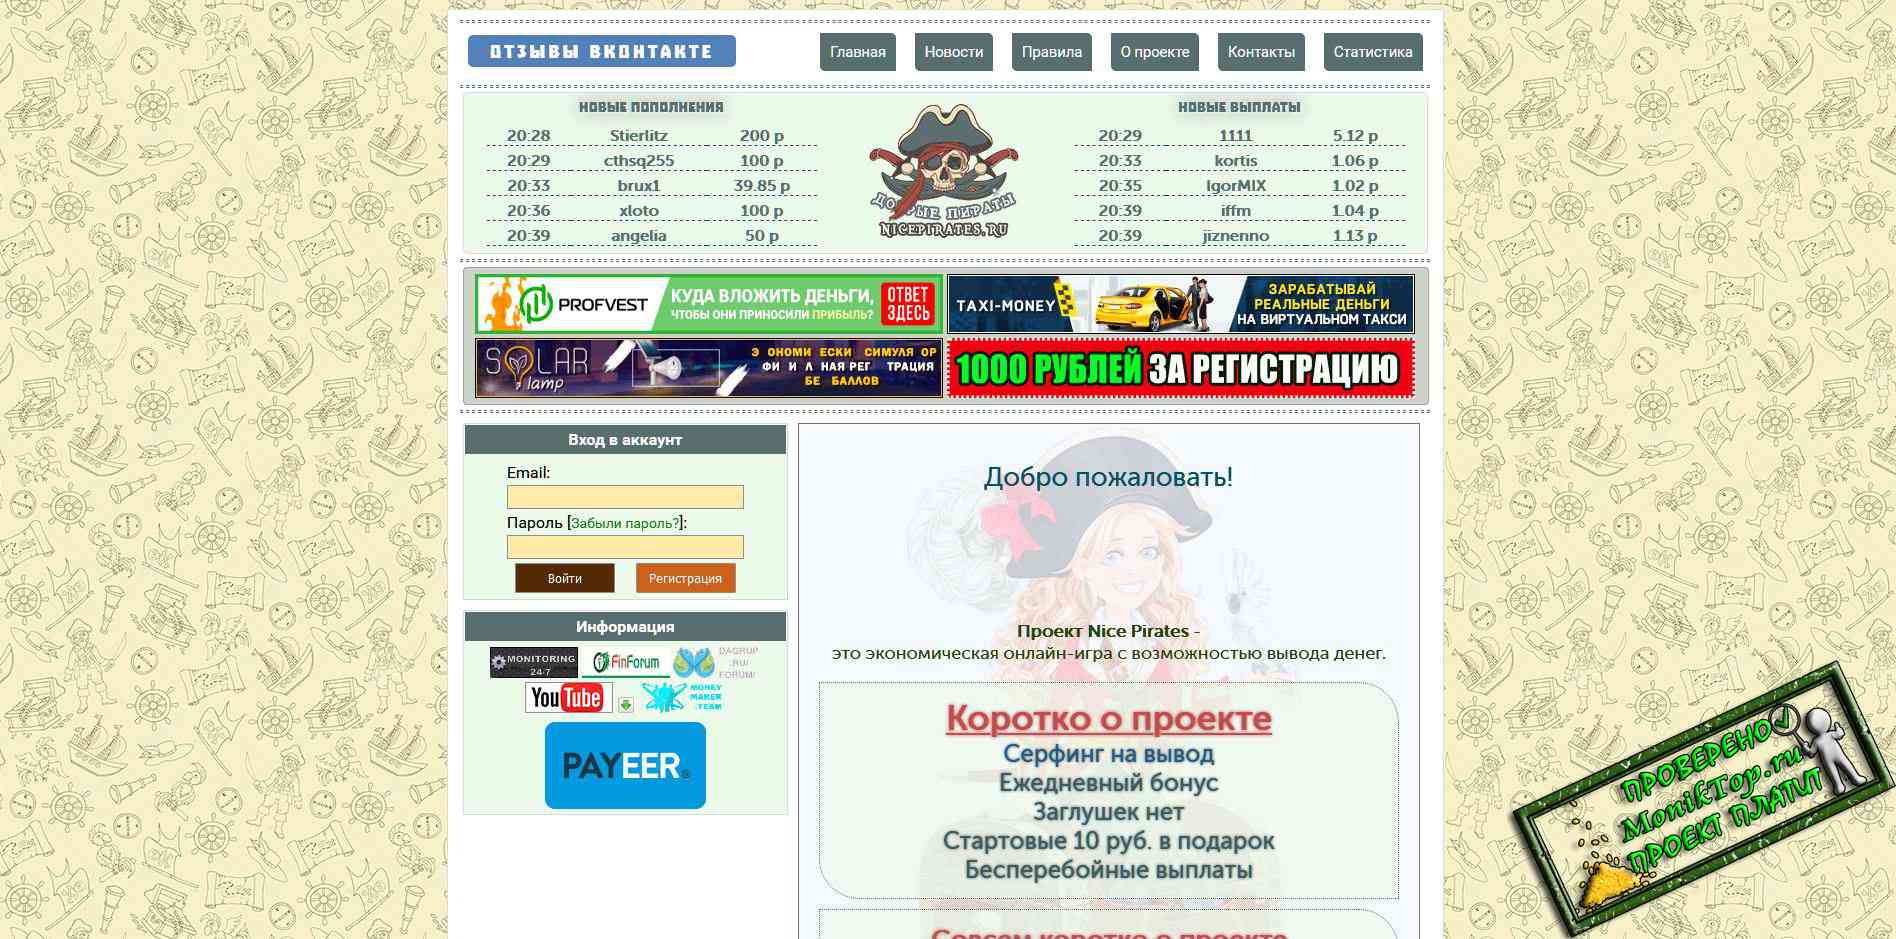 Заработок в телеграмме без вложений с выводом денег на карту сбербанка на русском языке фото 103